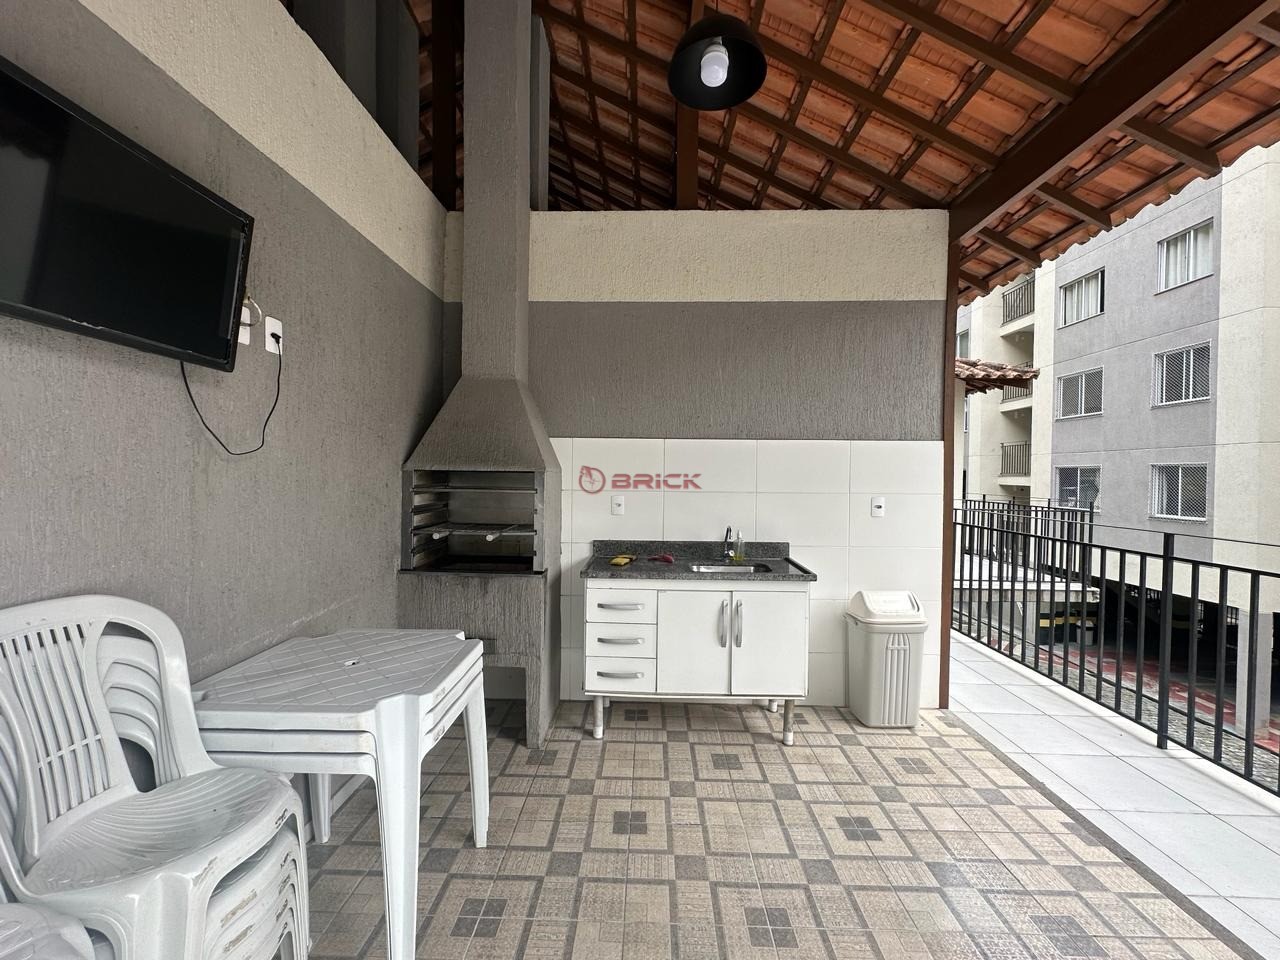 Apartamento à venda em Pimenteiras, Teresópolis - RJ - Foto 10